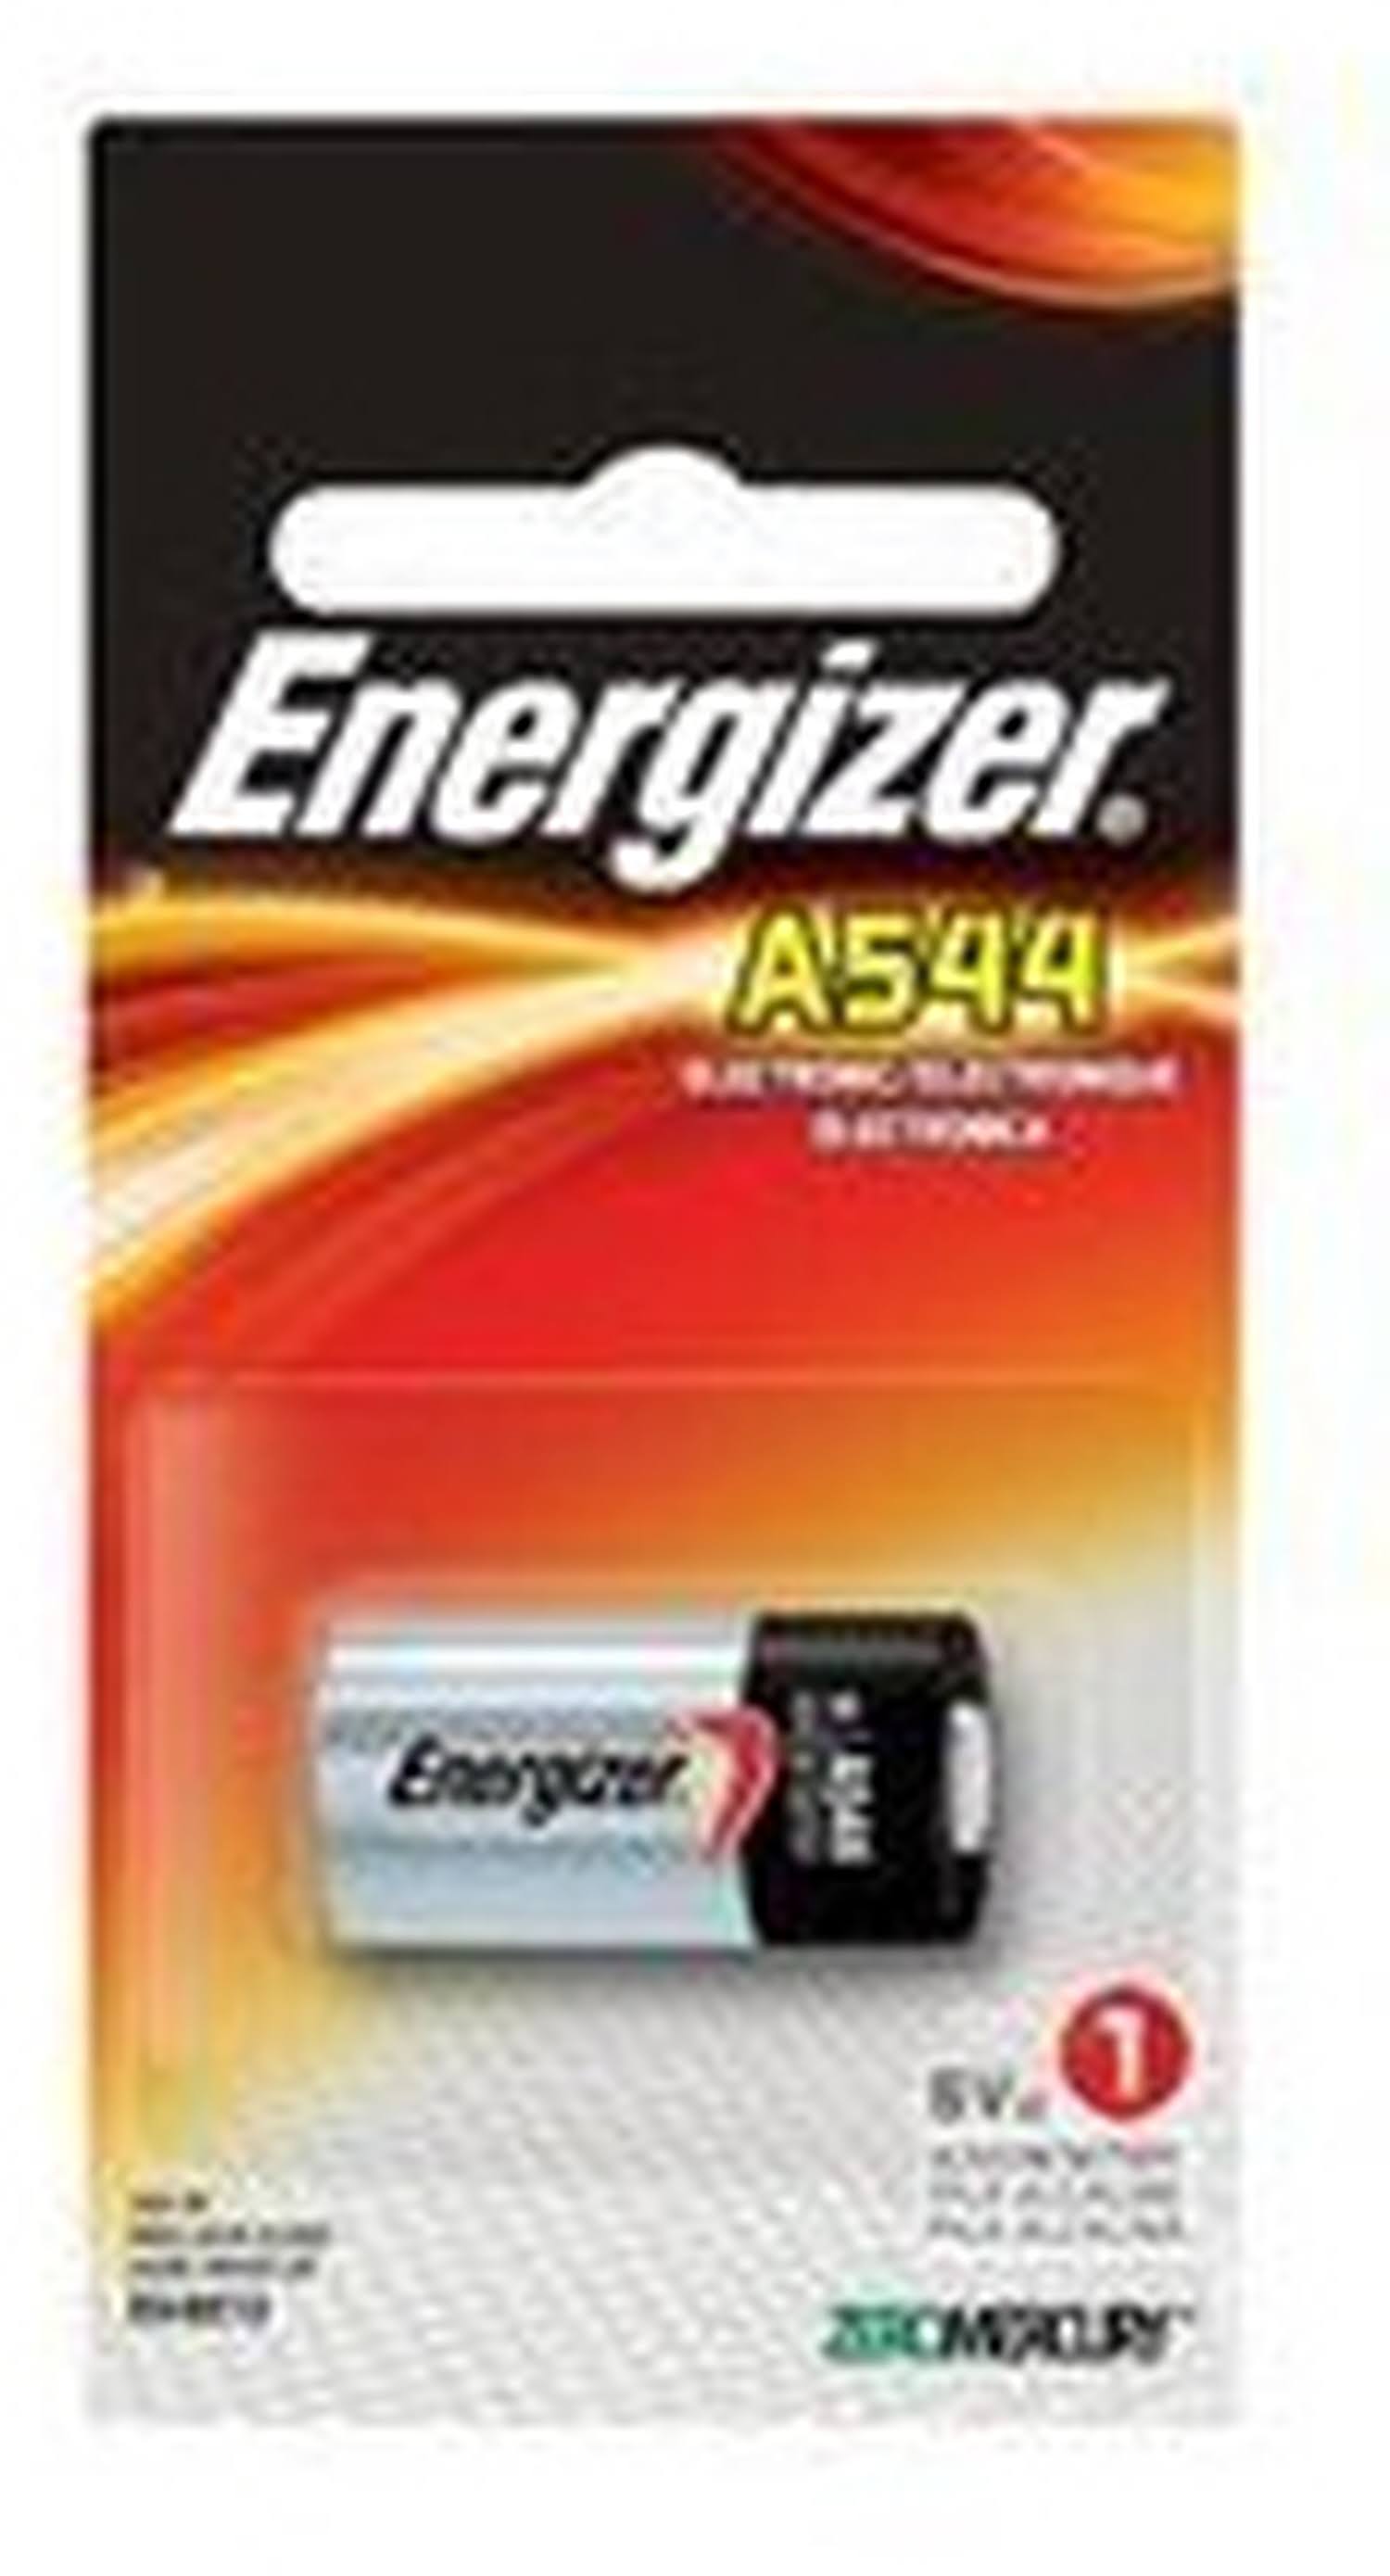 Energizer Alkaline Battery - 6V